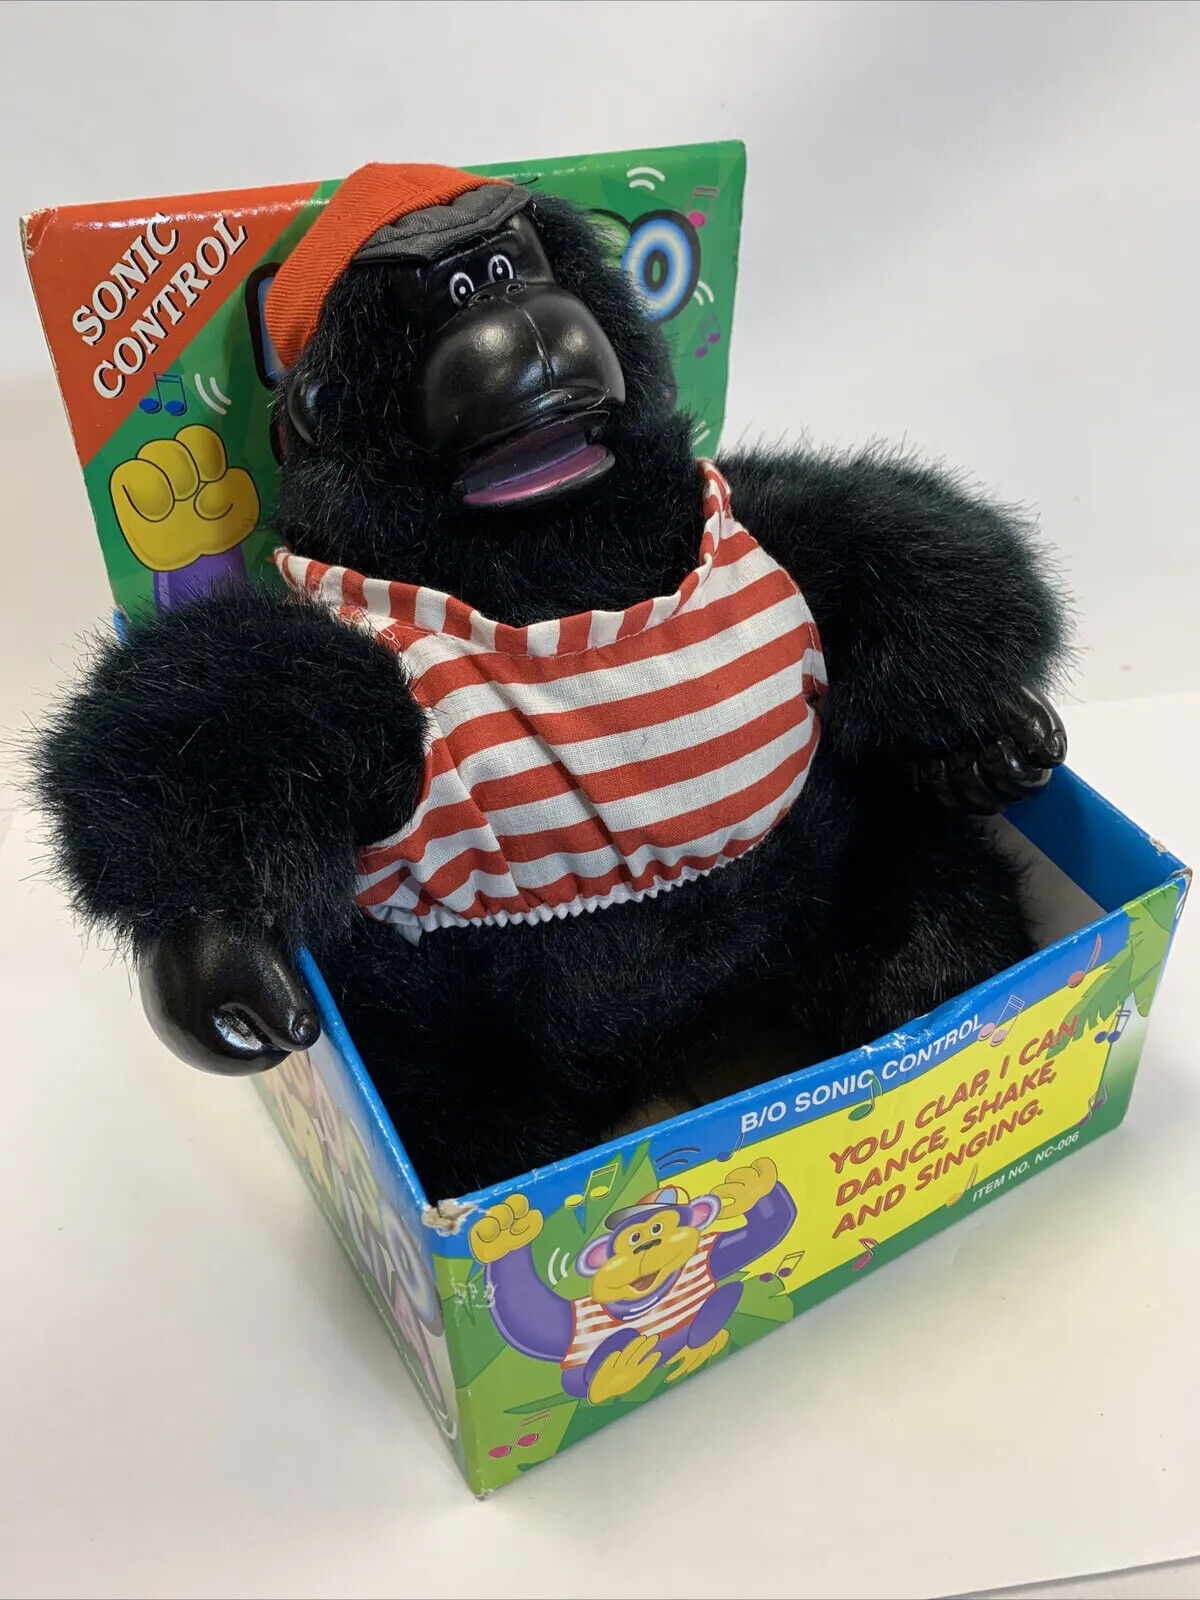 Magogo Rare Singing Dancing Shaking Gorilla Toy - W/ Box Vintage